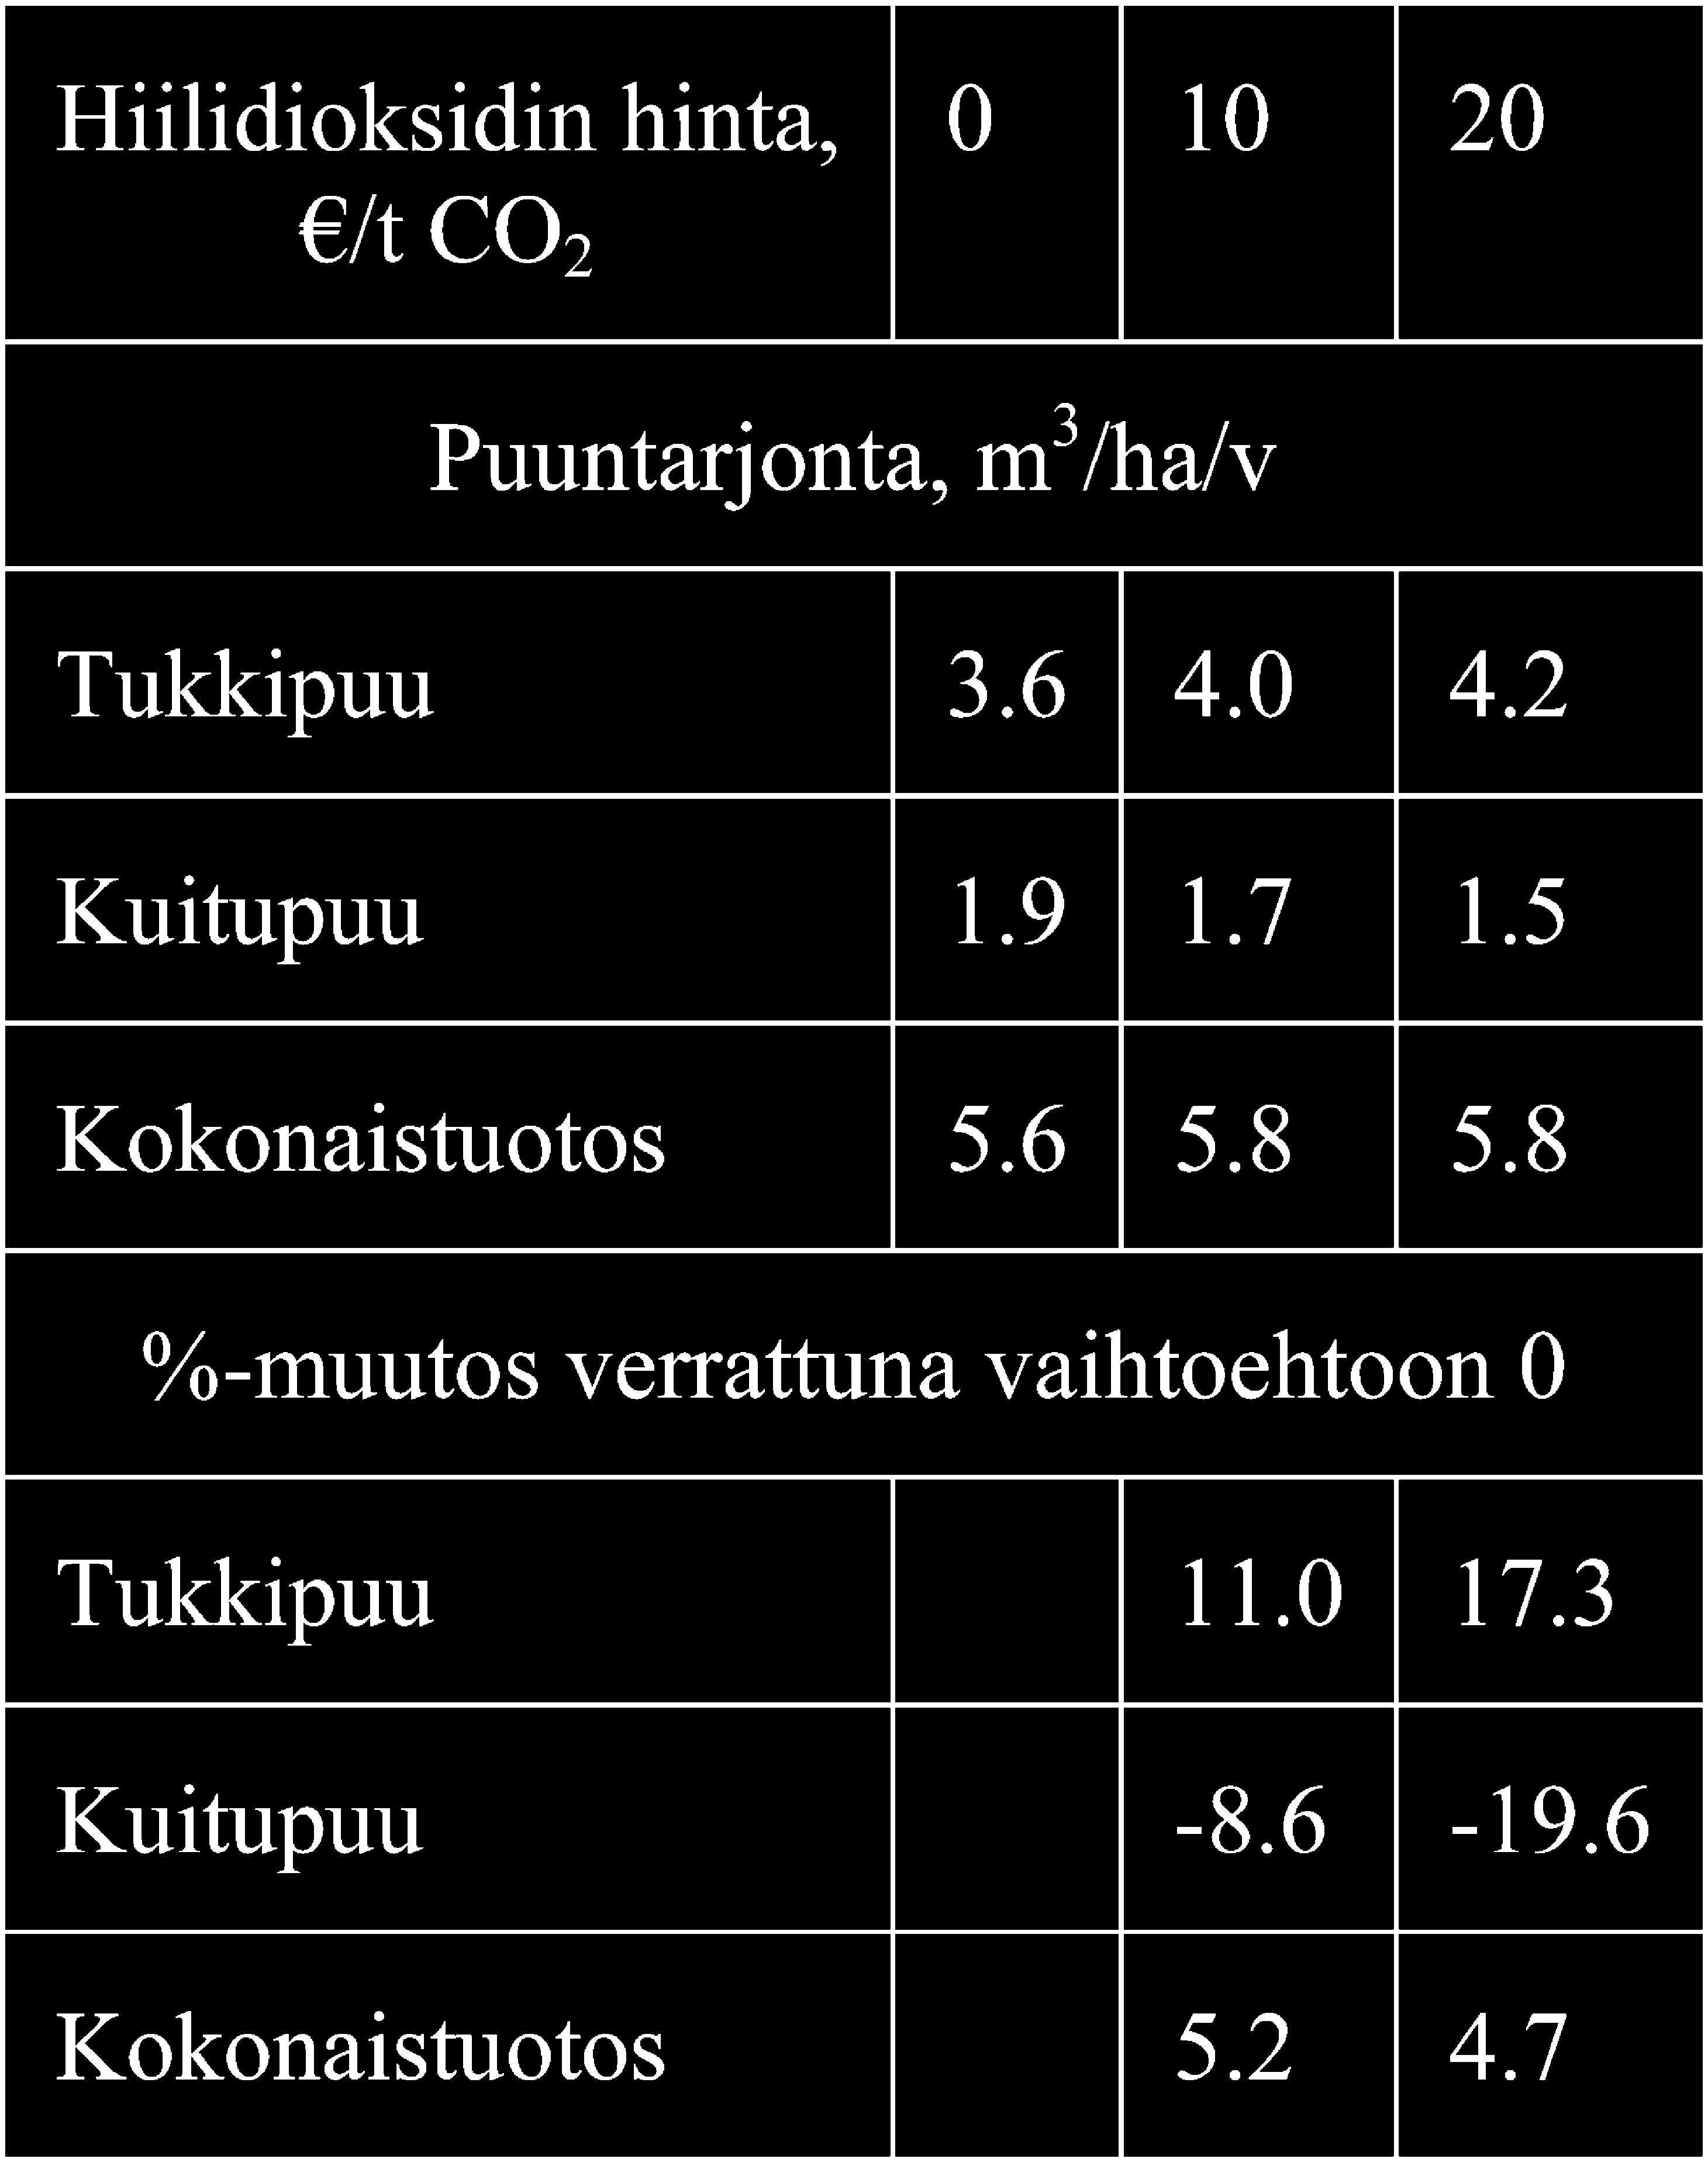 Suomen metsät ja puutuotteet... Lauri Valsta, Johanna Pohjola, Jyri Mononen ja Kim Pingoud Taulukko 4. Puuntuotos eri hiilidioksidin hintatasoilla puutavaralajeittain 7 kuusikon keskiarvona.